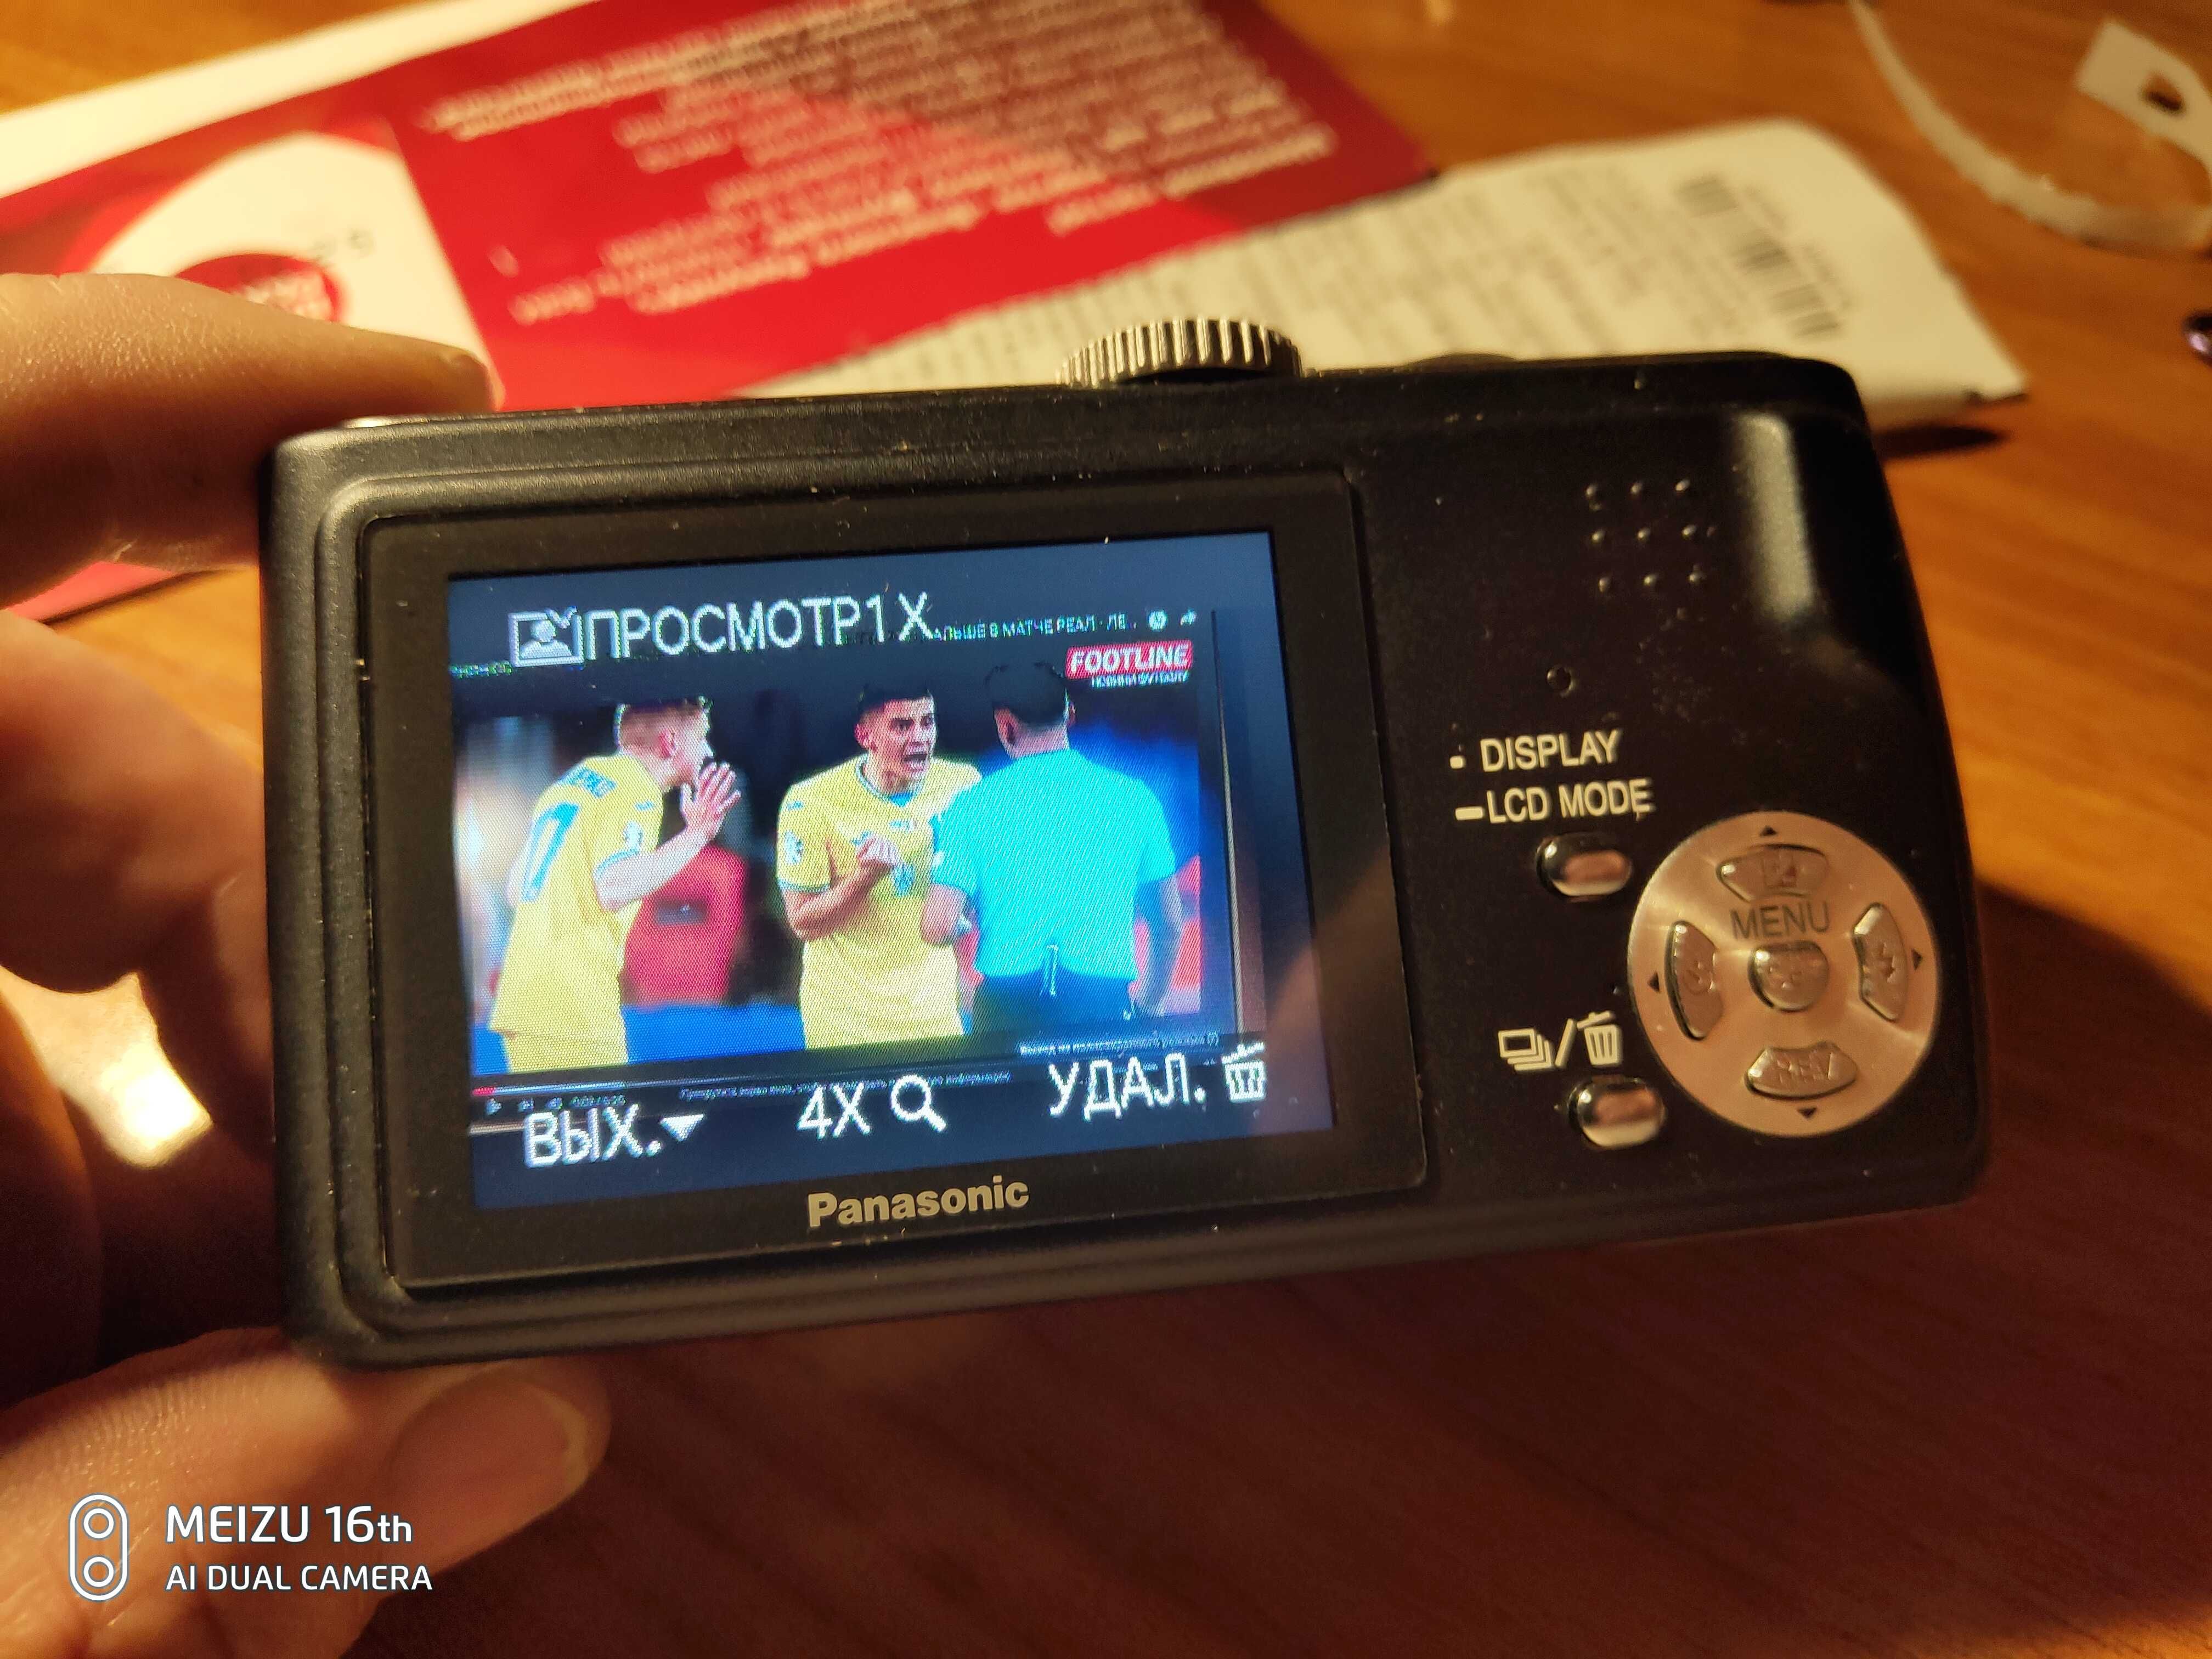 Цифровая фотокамера PANASONIC DMC-TZ1 (Япония) LUMIX.Объектив LEICA.